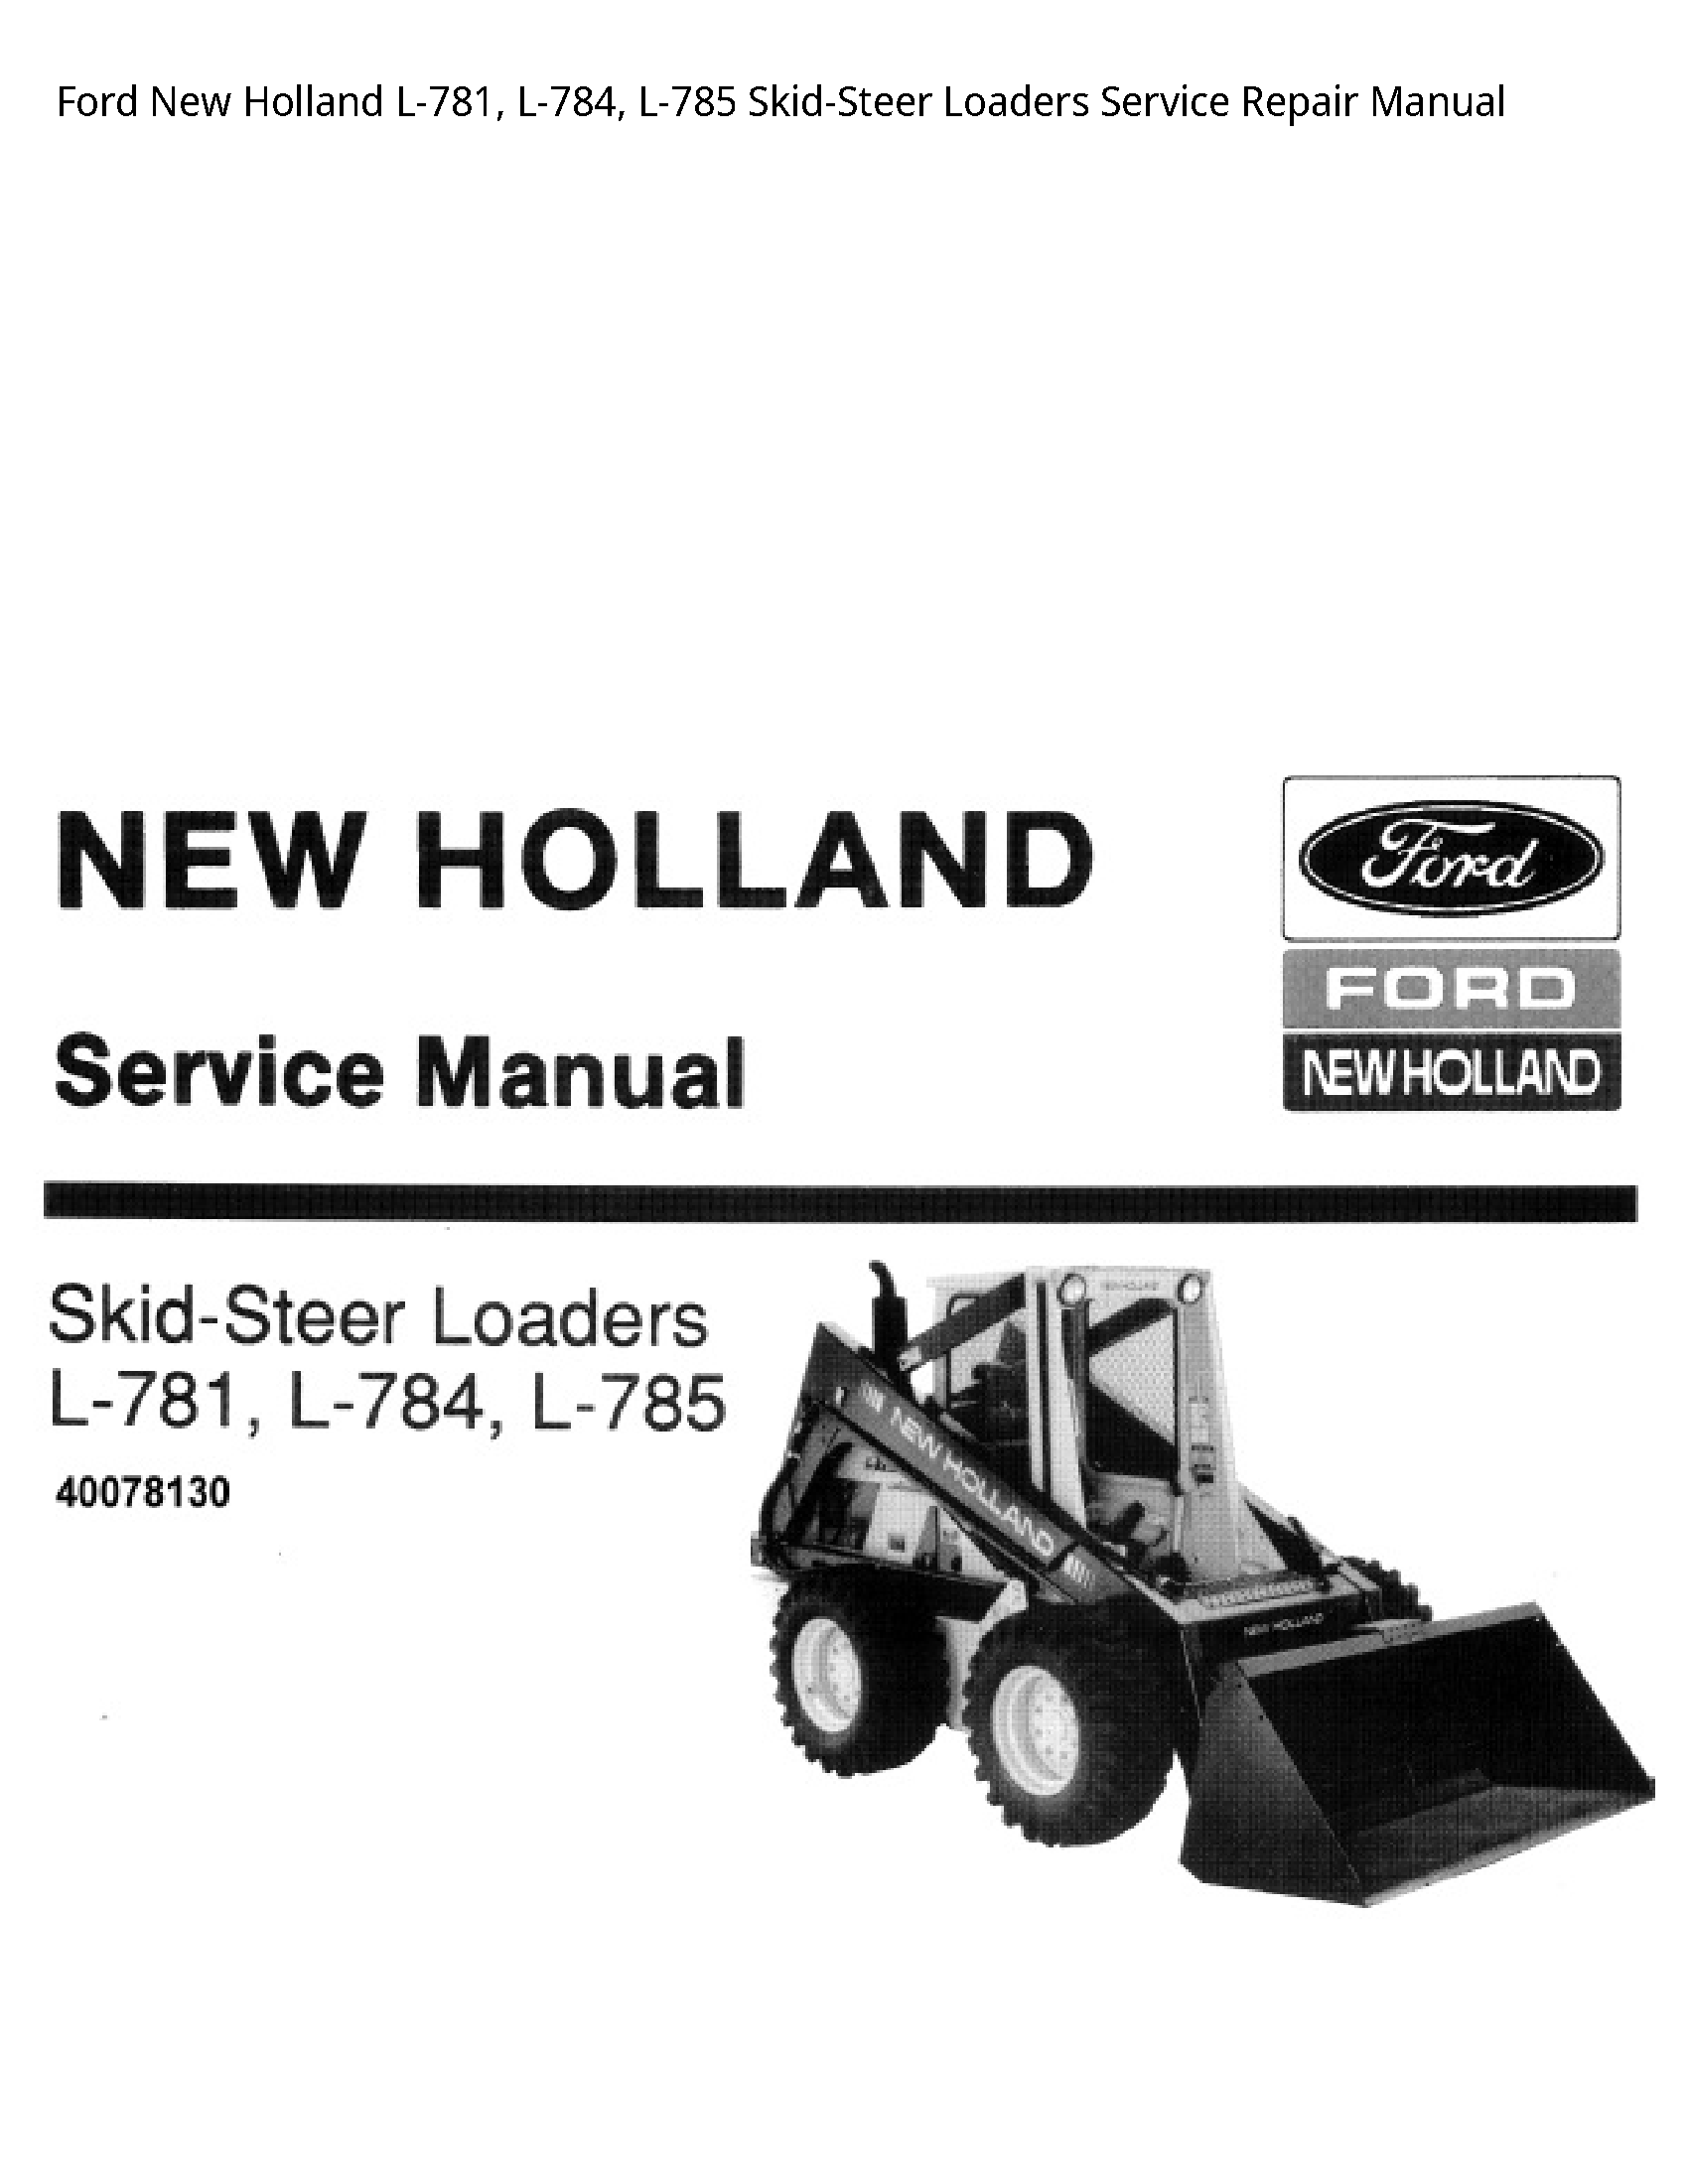  L-781 Skid-Steer Loaders manual